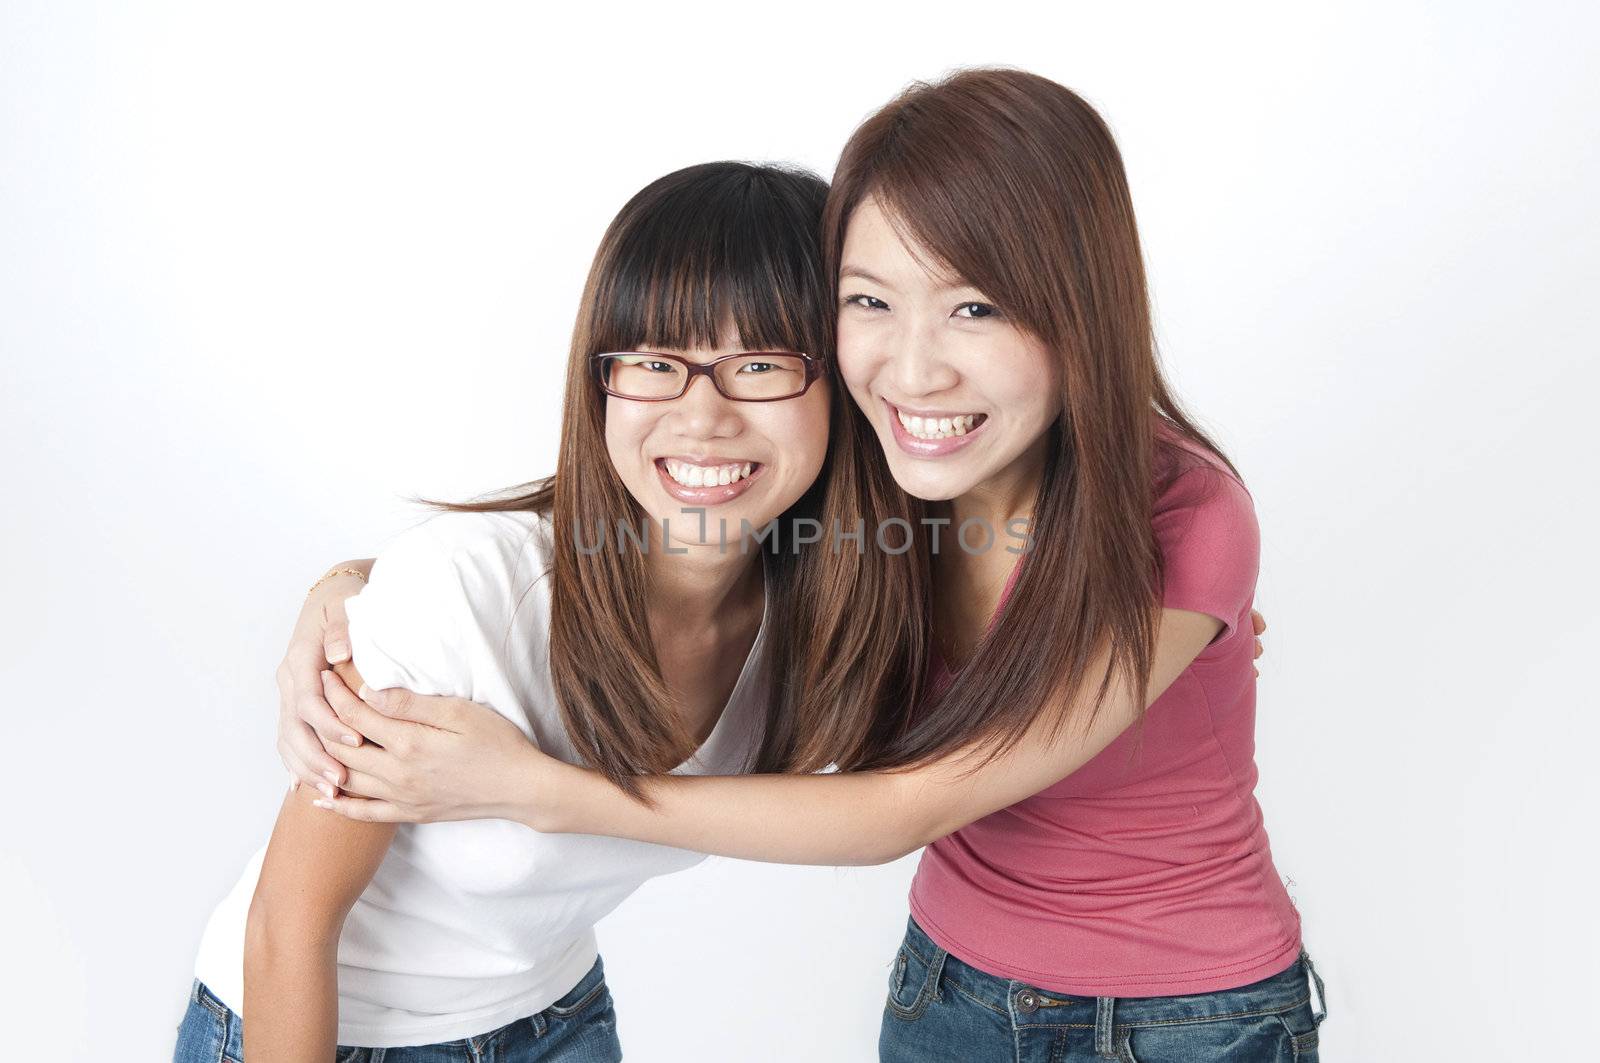 2 asian girls having fun by yuliang11